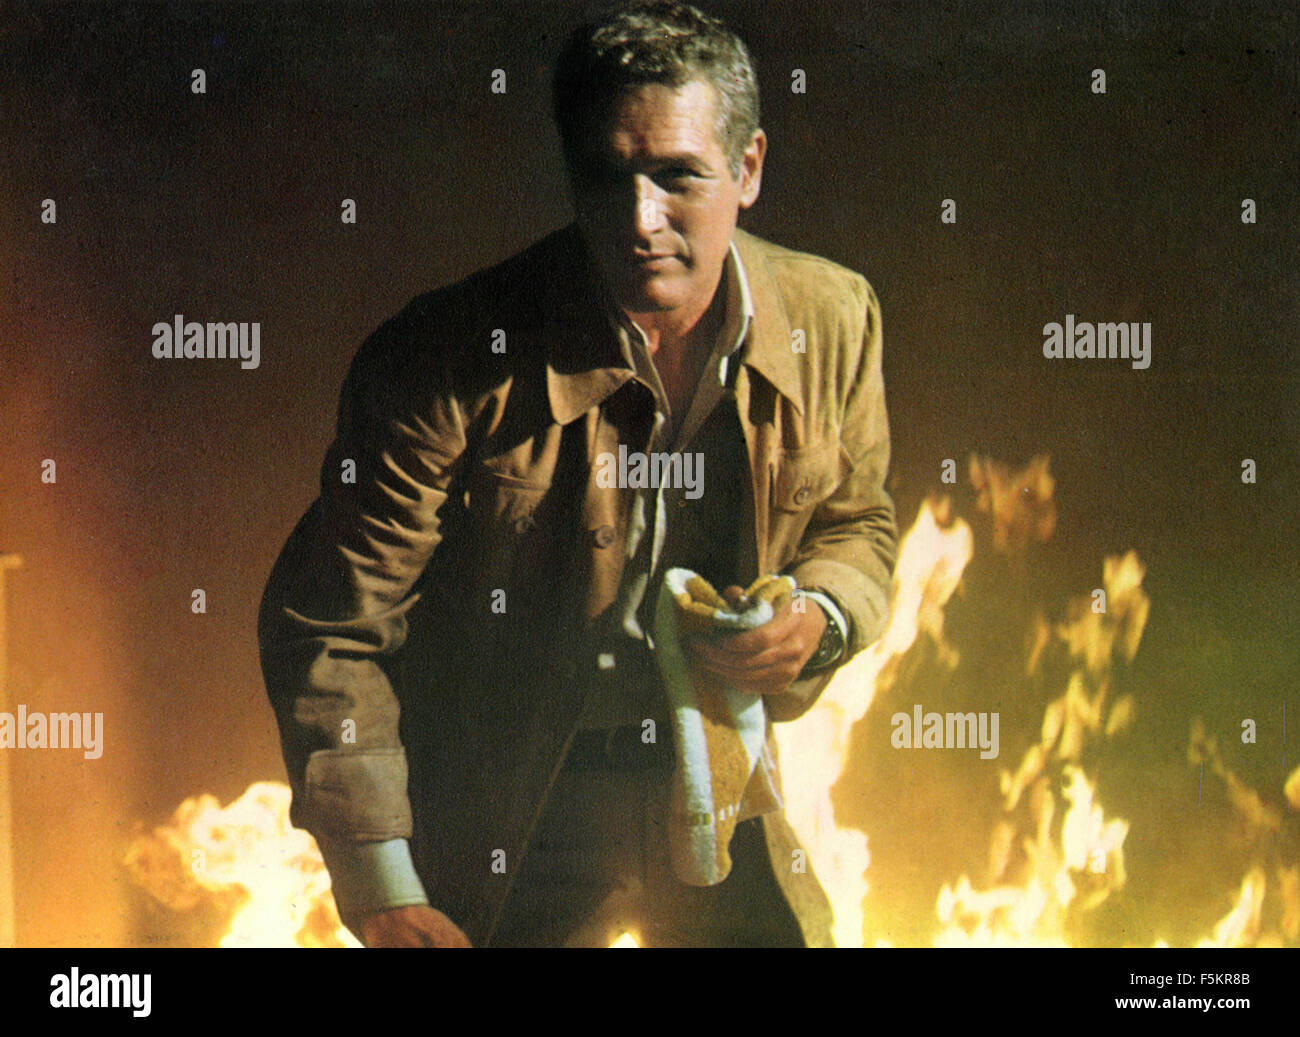 Der amerikanische Schauspieler Paul Newman in einer Szene aus dem Film "The Towering Inferno" Stockfoto